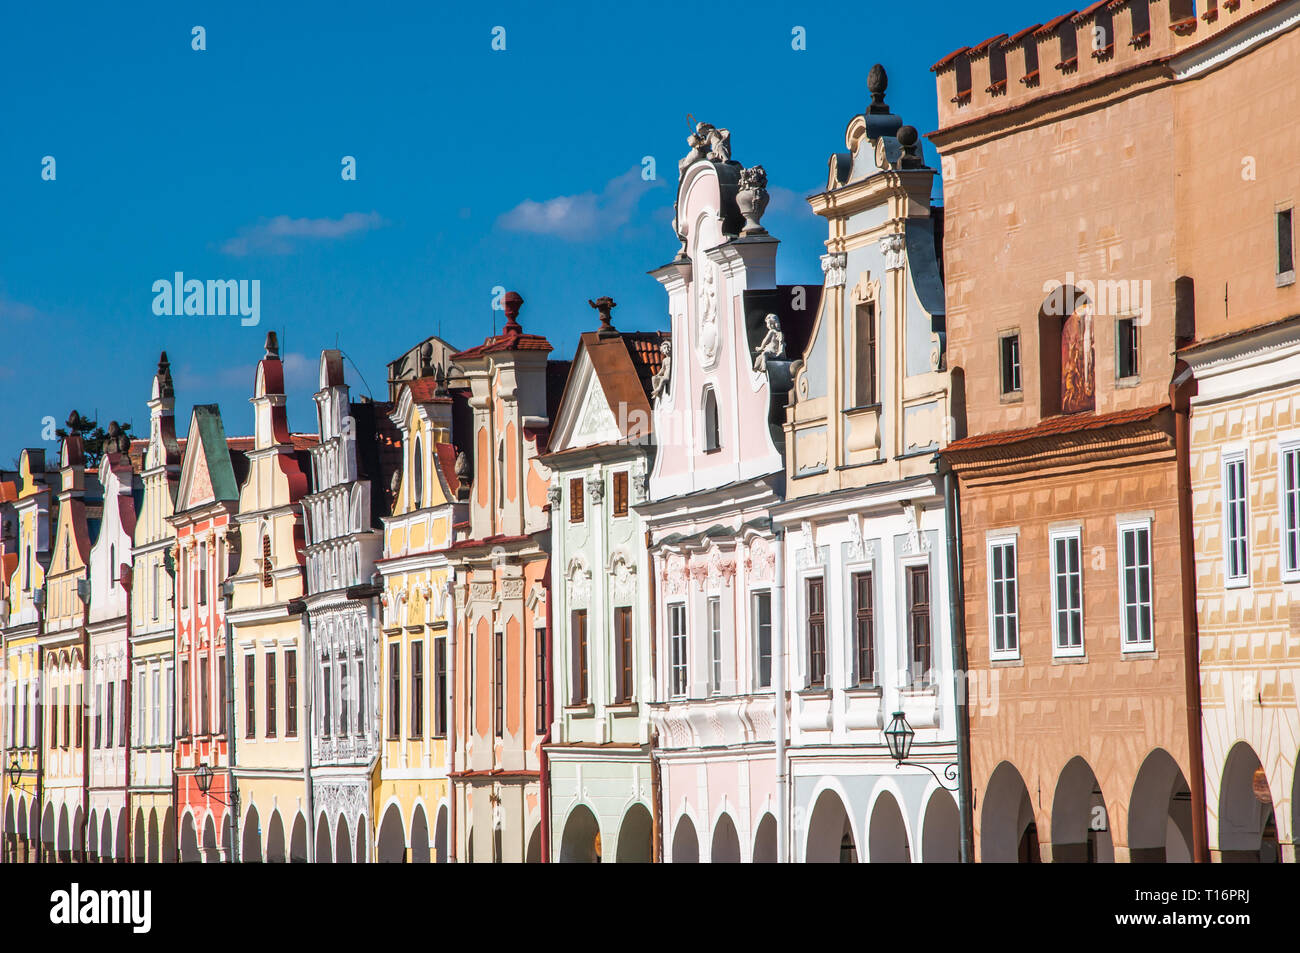 Une façade de maisons Renaissance et baroques à Telc, région de Vysocina en République tchèque (site du patrimoine mondial de l'UNESCO) Banque D'Images